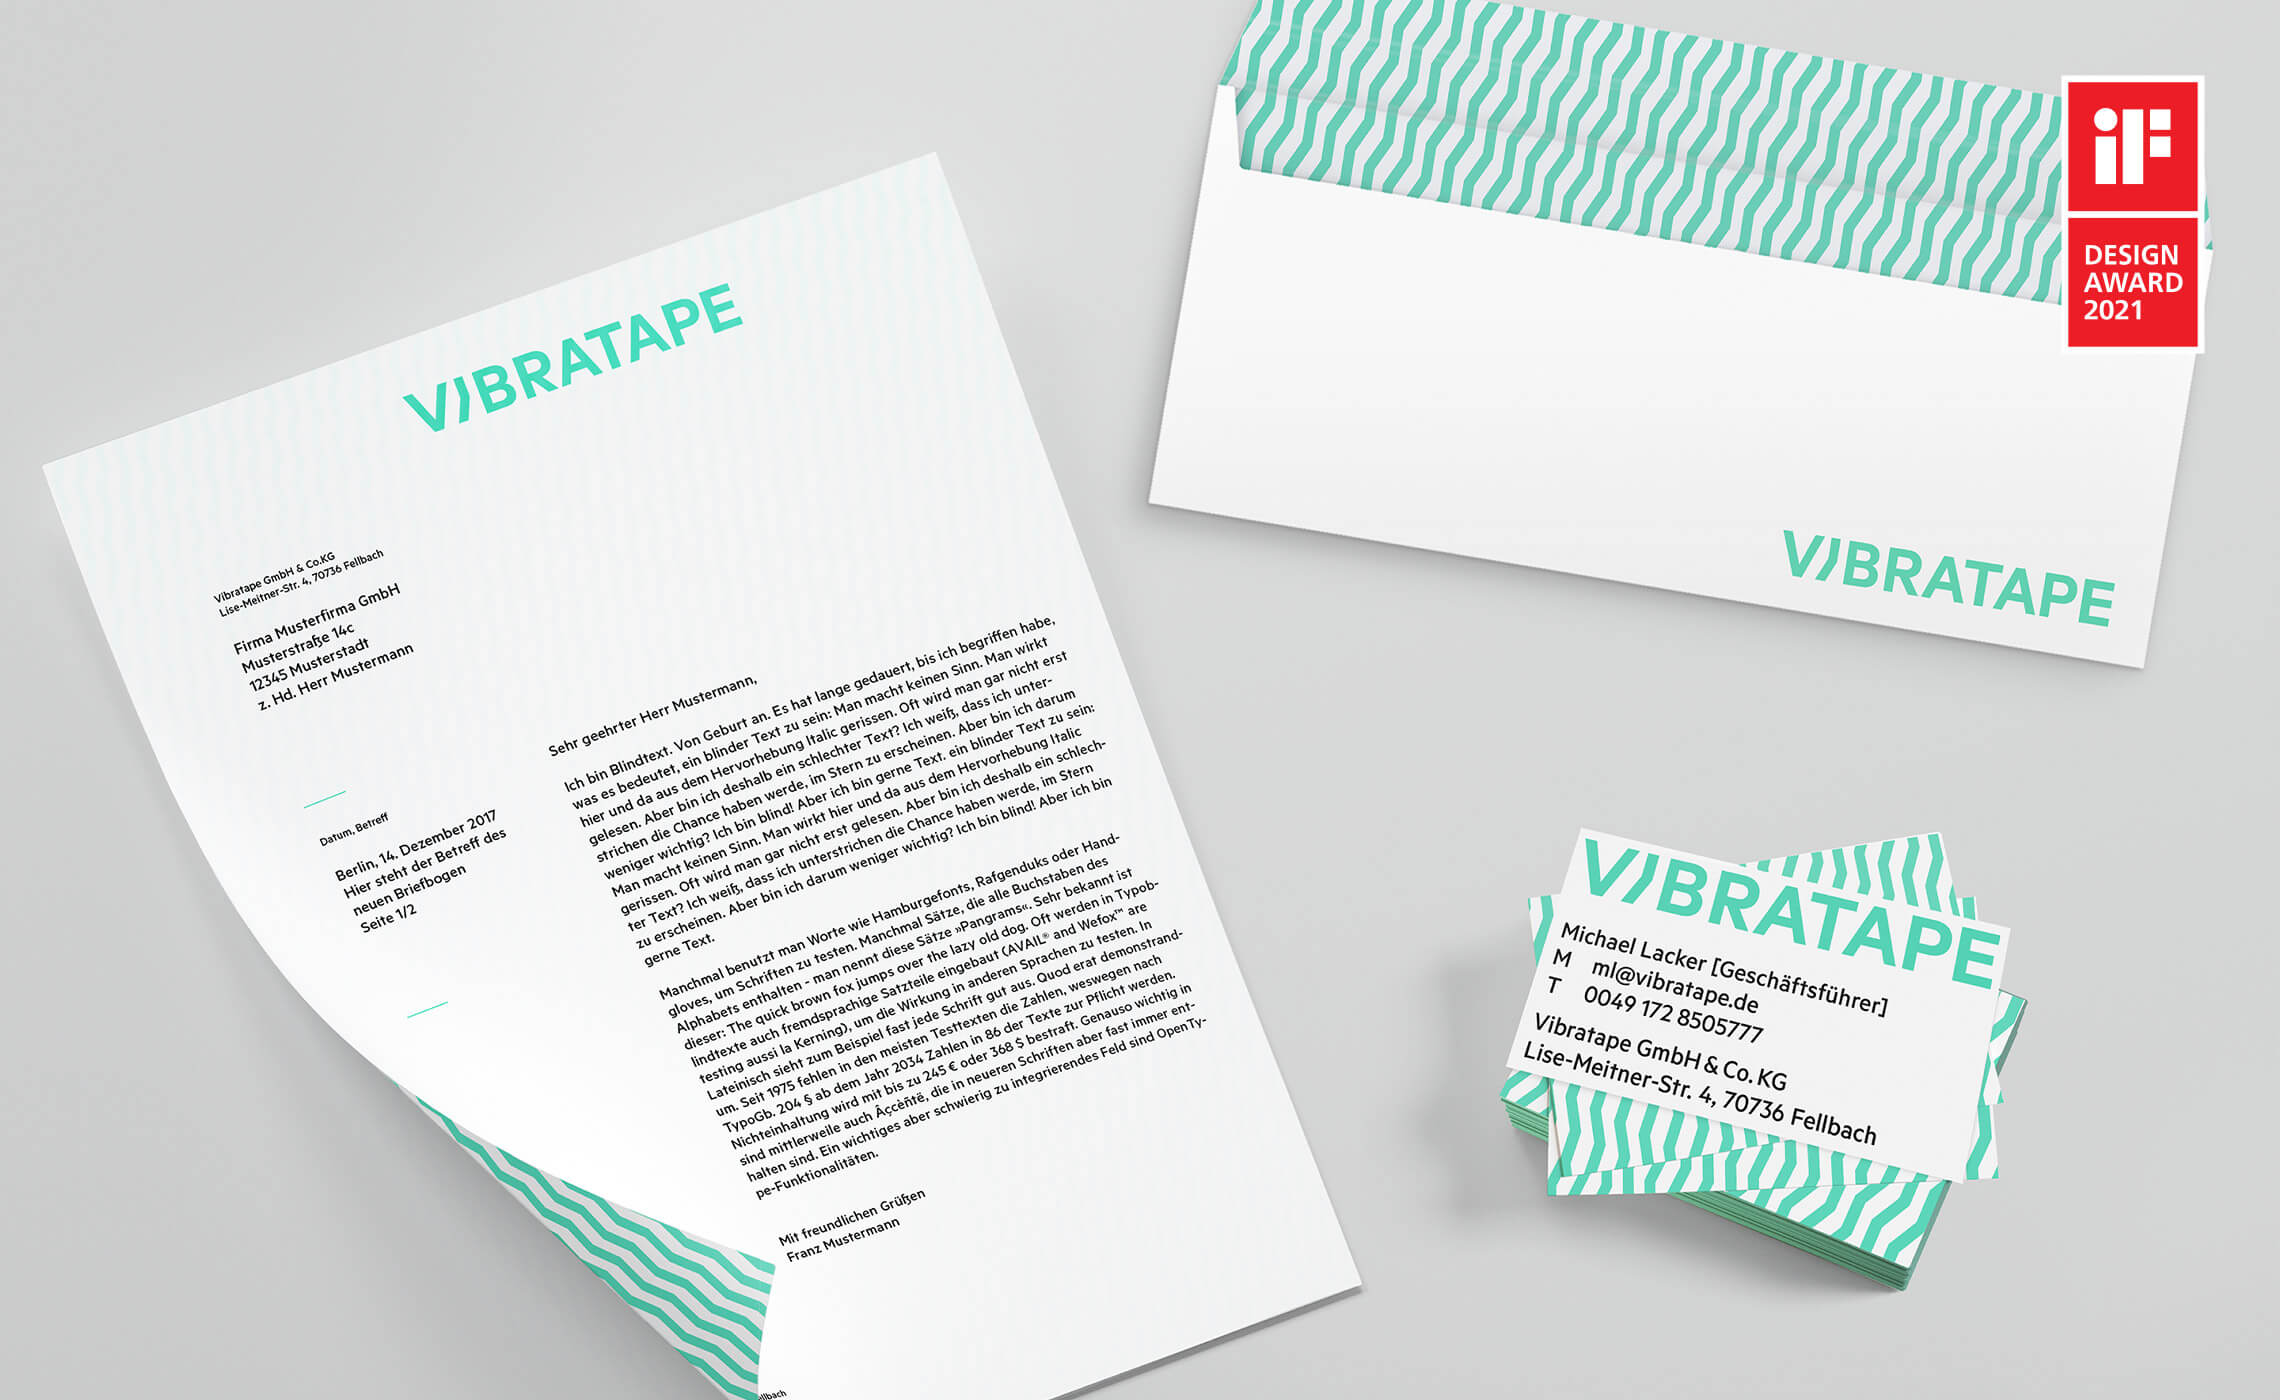 Auf diesem Bild ist die Geschäftsausstattung von Vibratape mit dem IF-Design Award-Logo zu sehen.